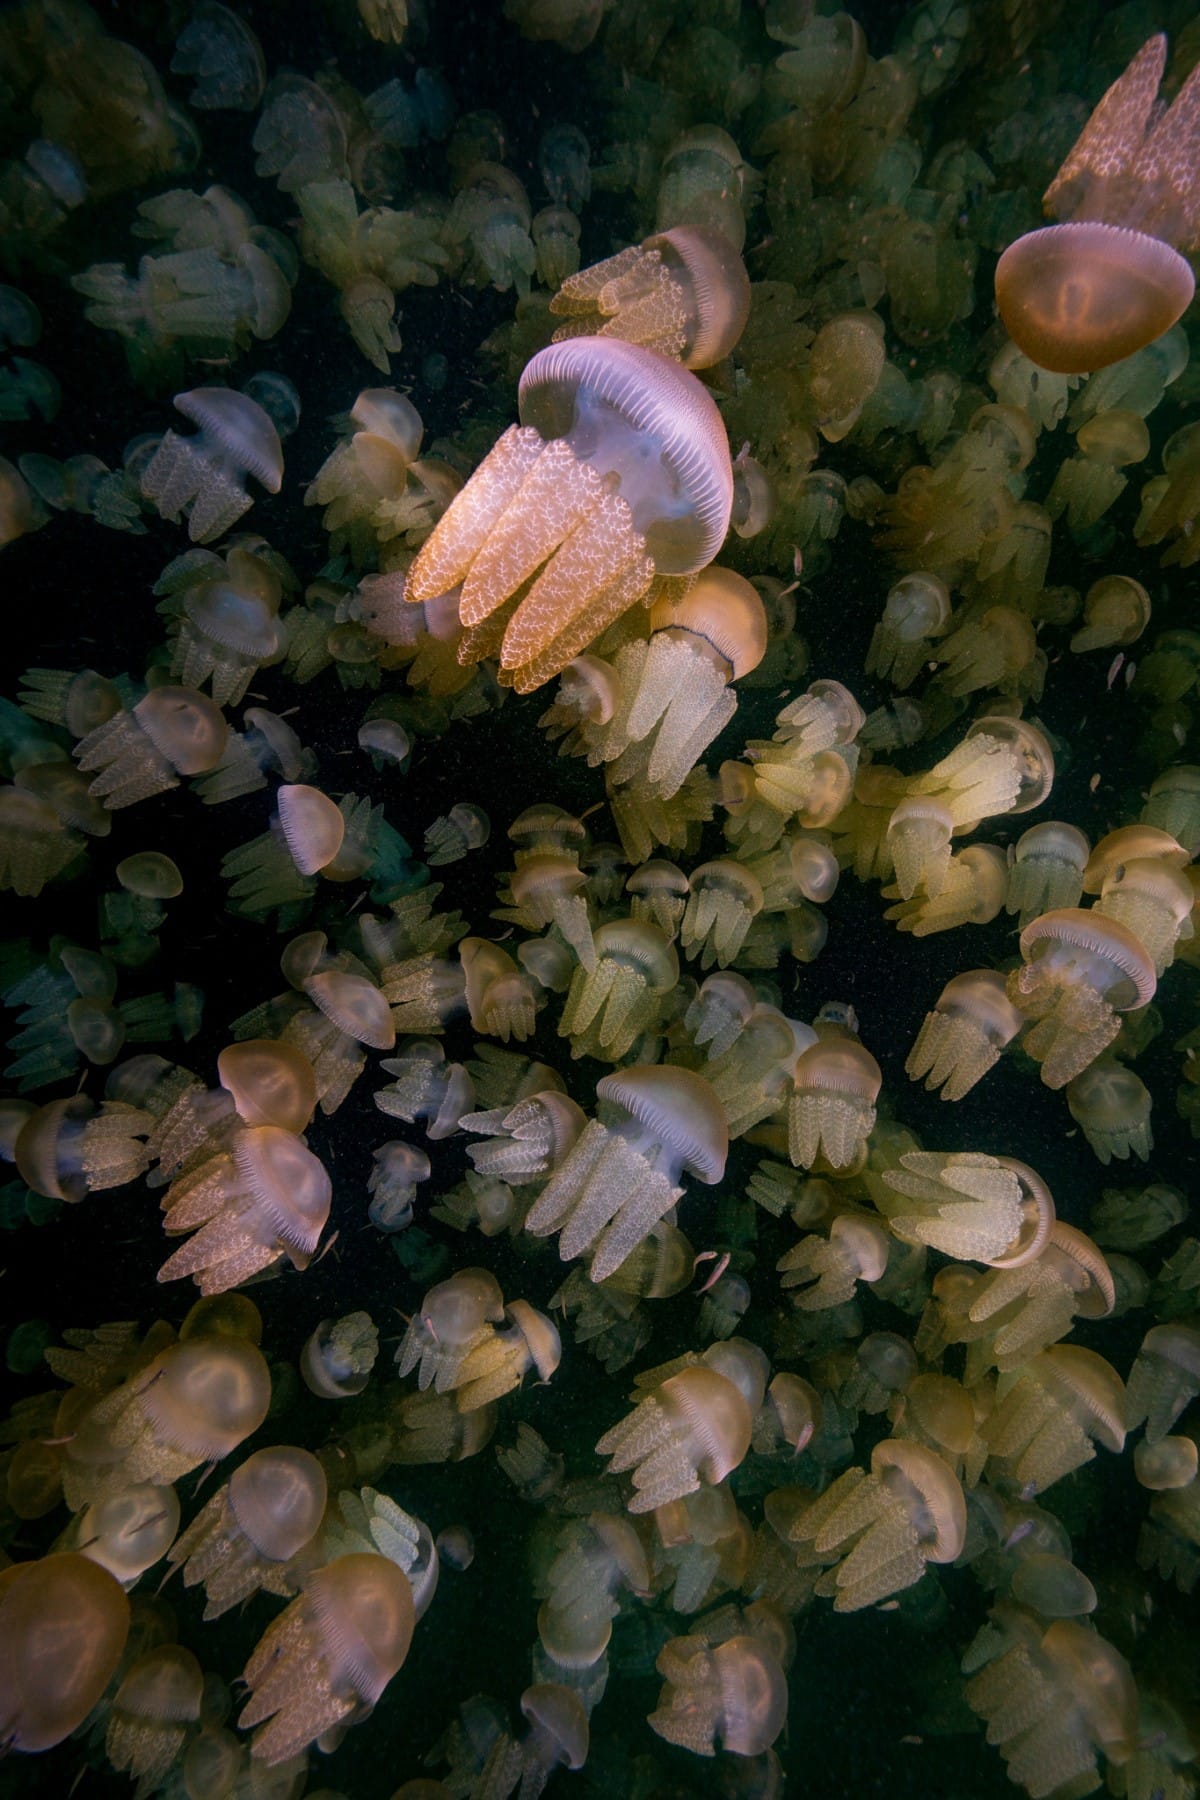 Blubber jellyfish underwater in Australia